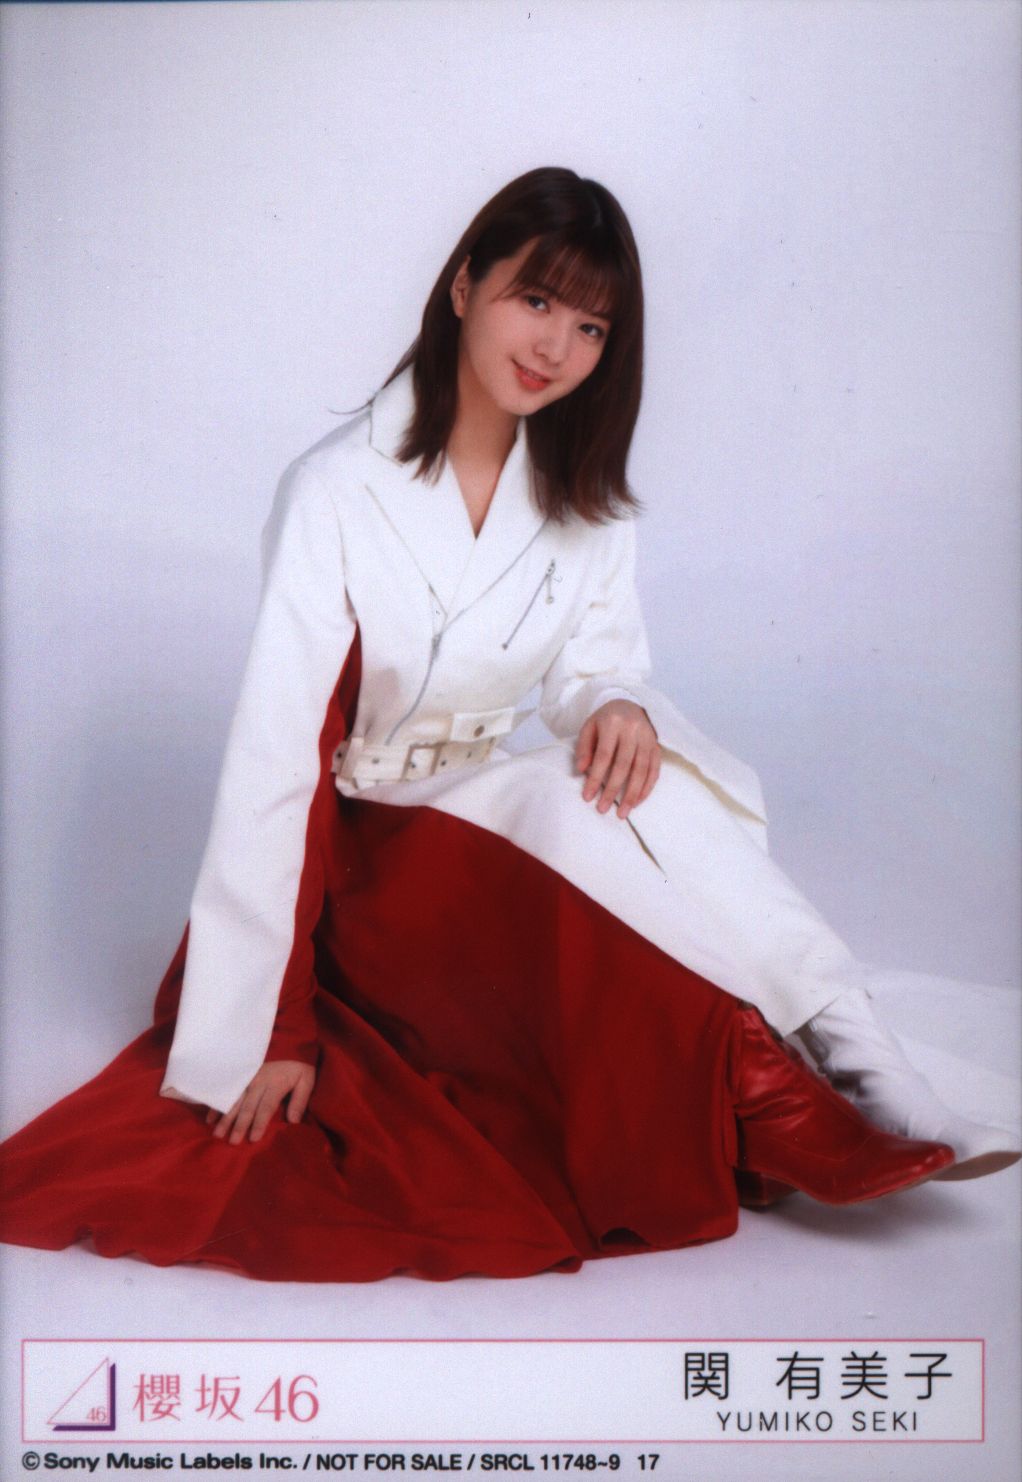 櫻坂46 欅坂46 関有美子 卒業 ランダム生写真 40種 フルコンプ - アイドル